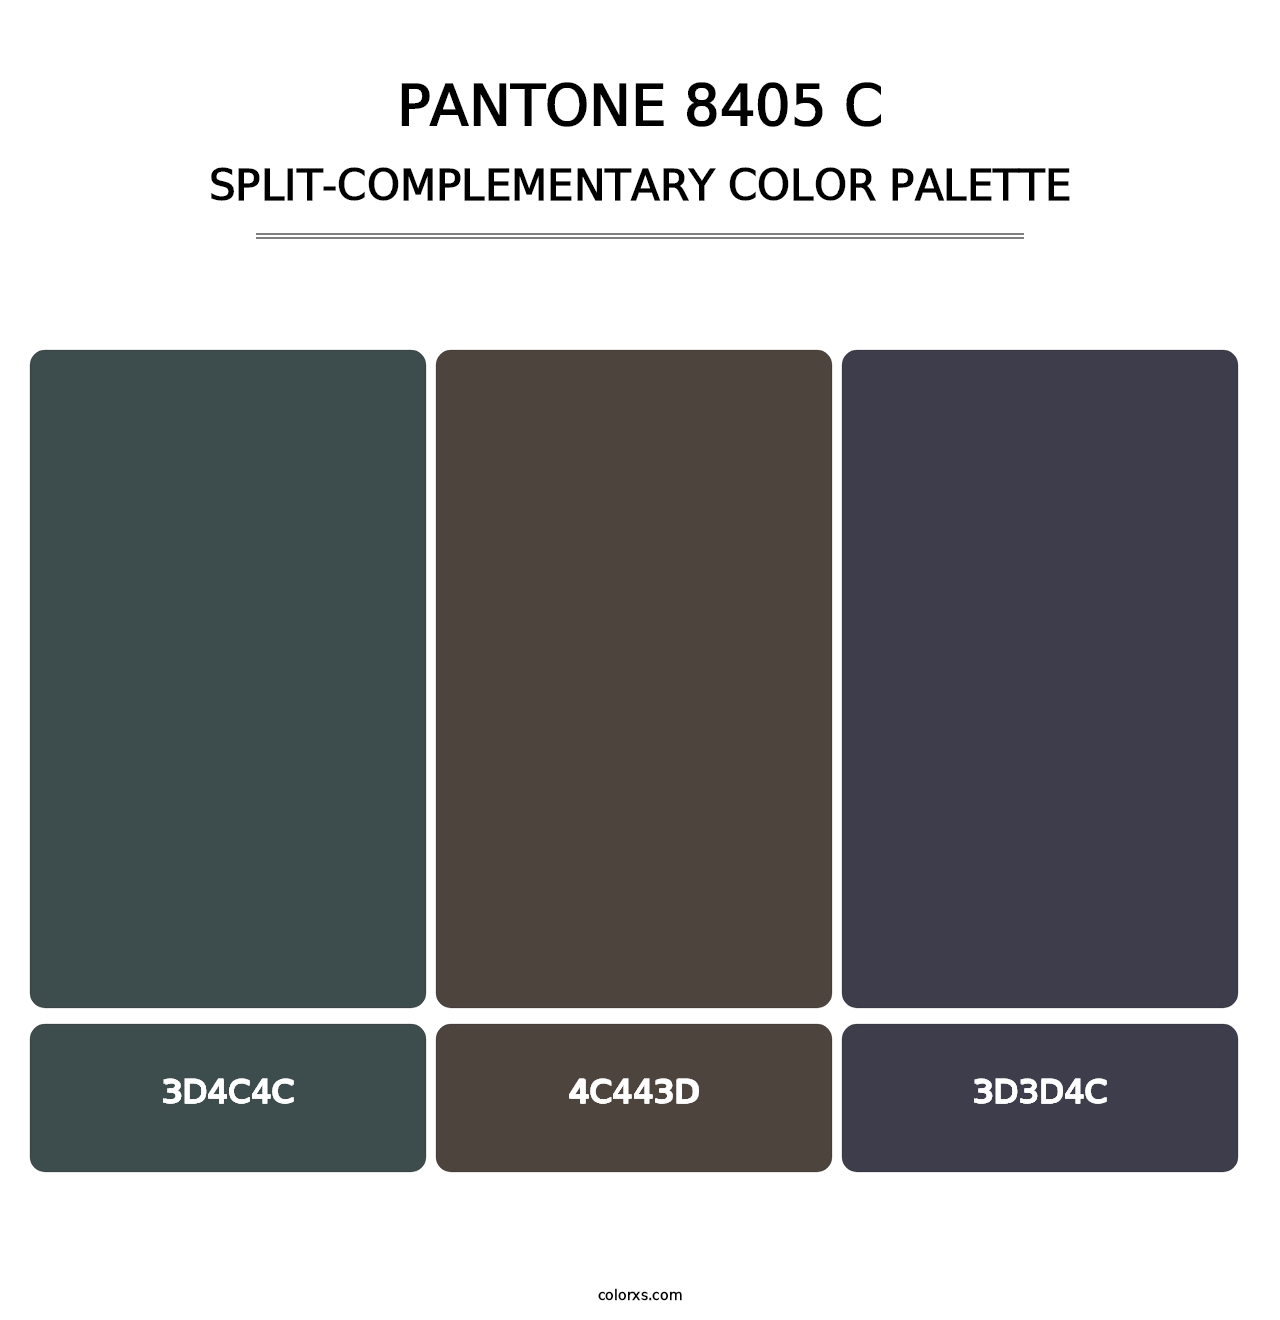 PANTONE 8405 C - Split-Complementary Color Palette